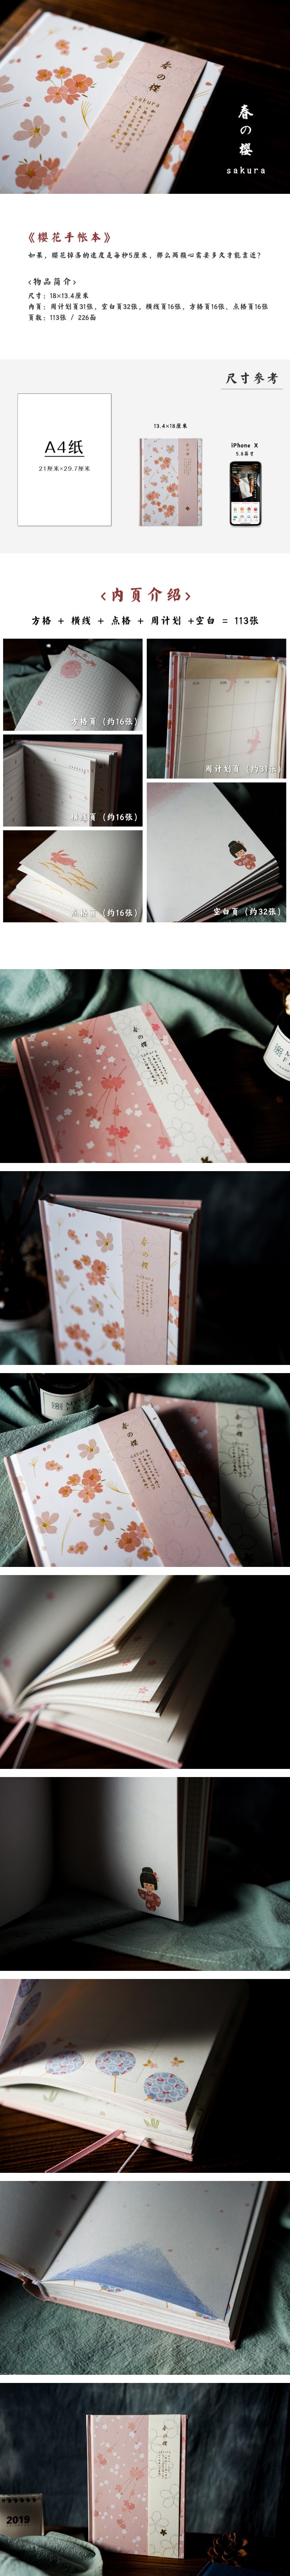 白糖 樱花手帐本 日系森系粉色清新简约和风日式文艺日记文创笔记本500g